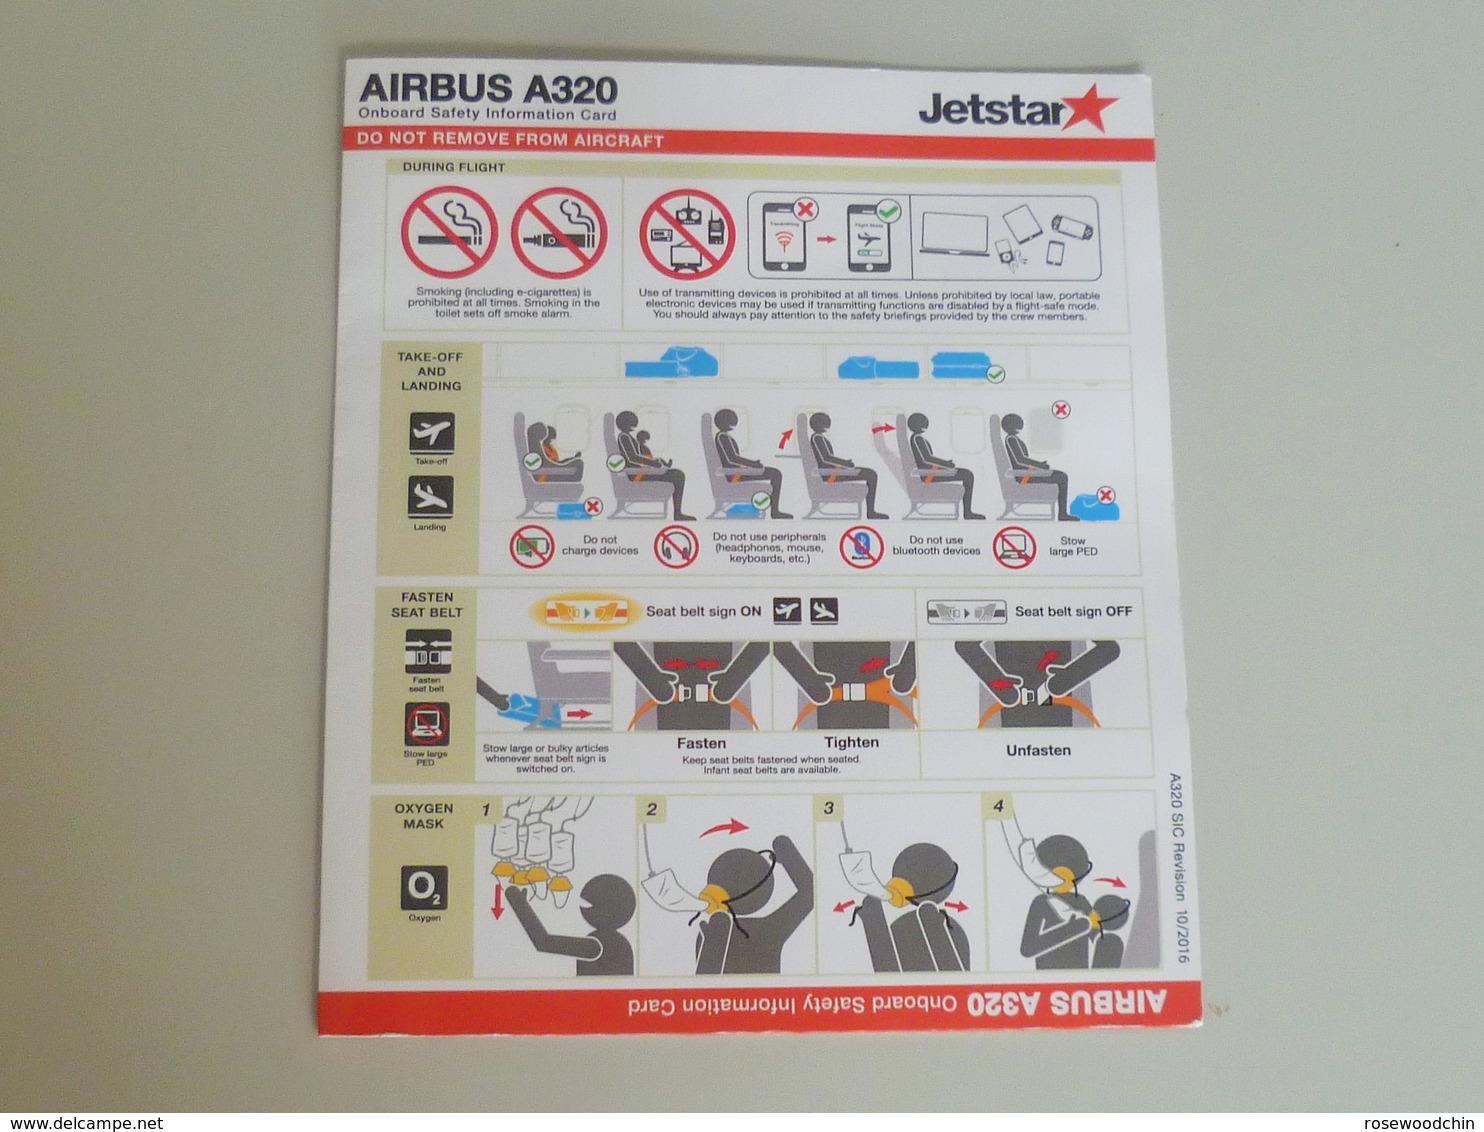 Airlines Jetstar A320 Airbus Onboard Safety Information Card (#3) - Sicherheitsinfos